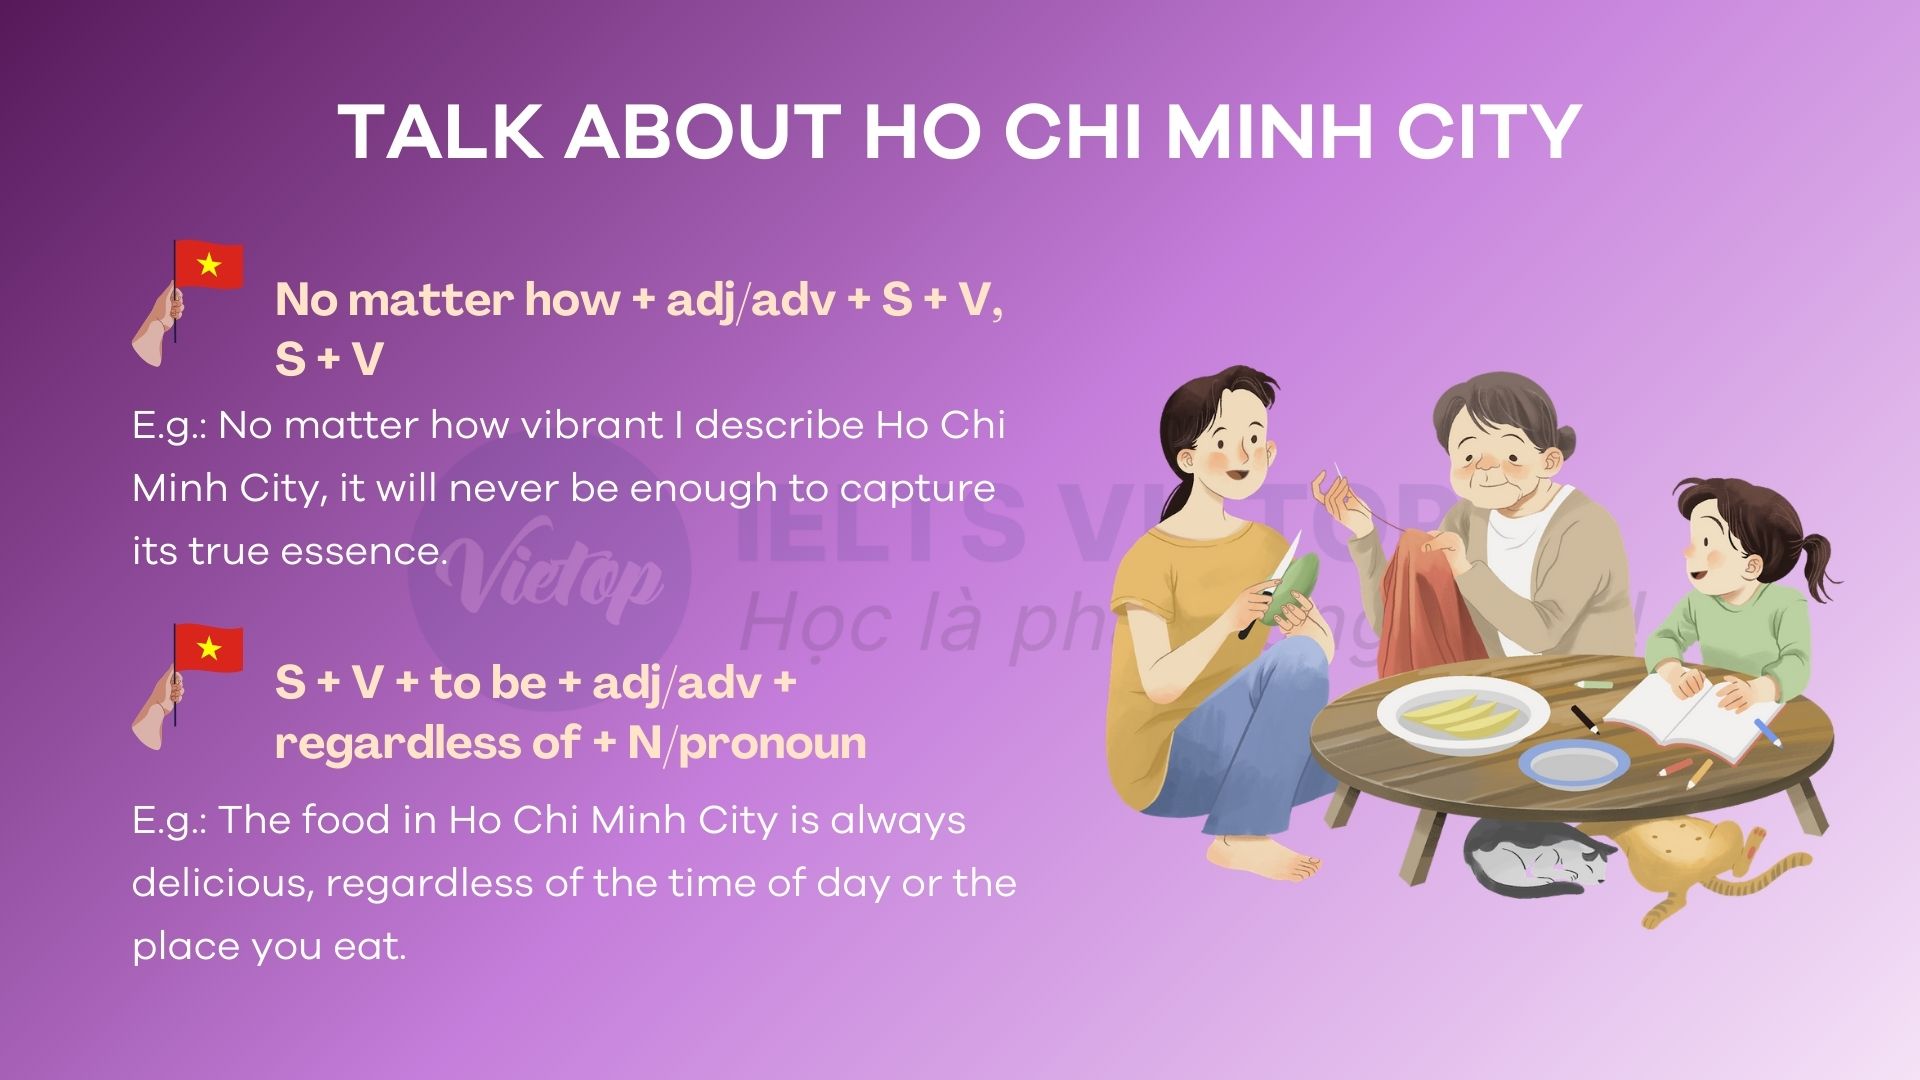 Cấu trúc chủ đề talk about Ho Chi Minh city